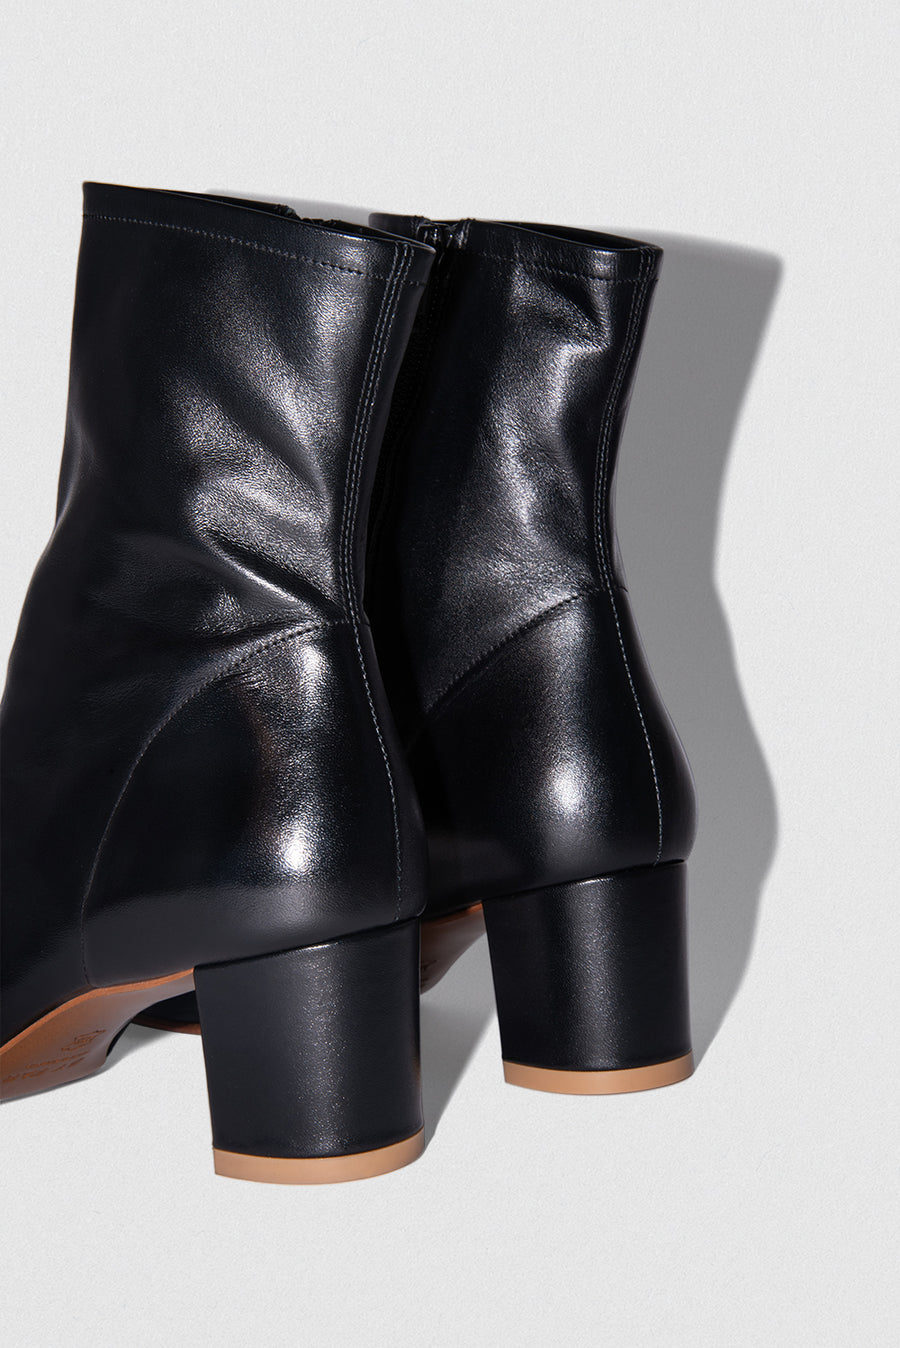 Sofia Black Leather – BY FAR